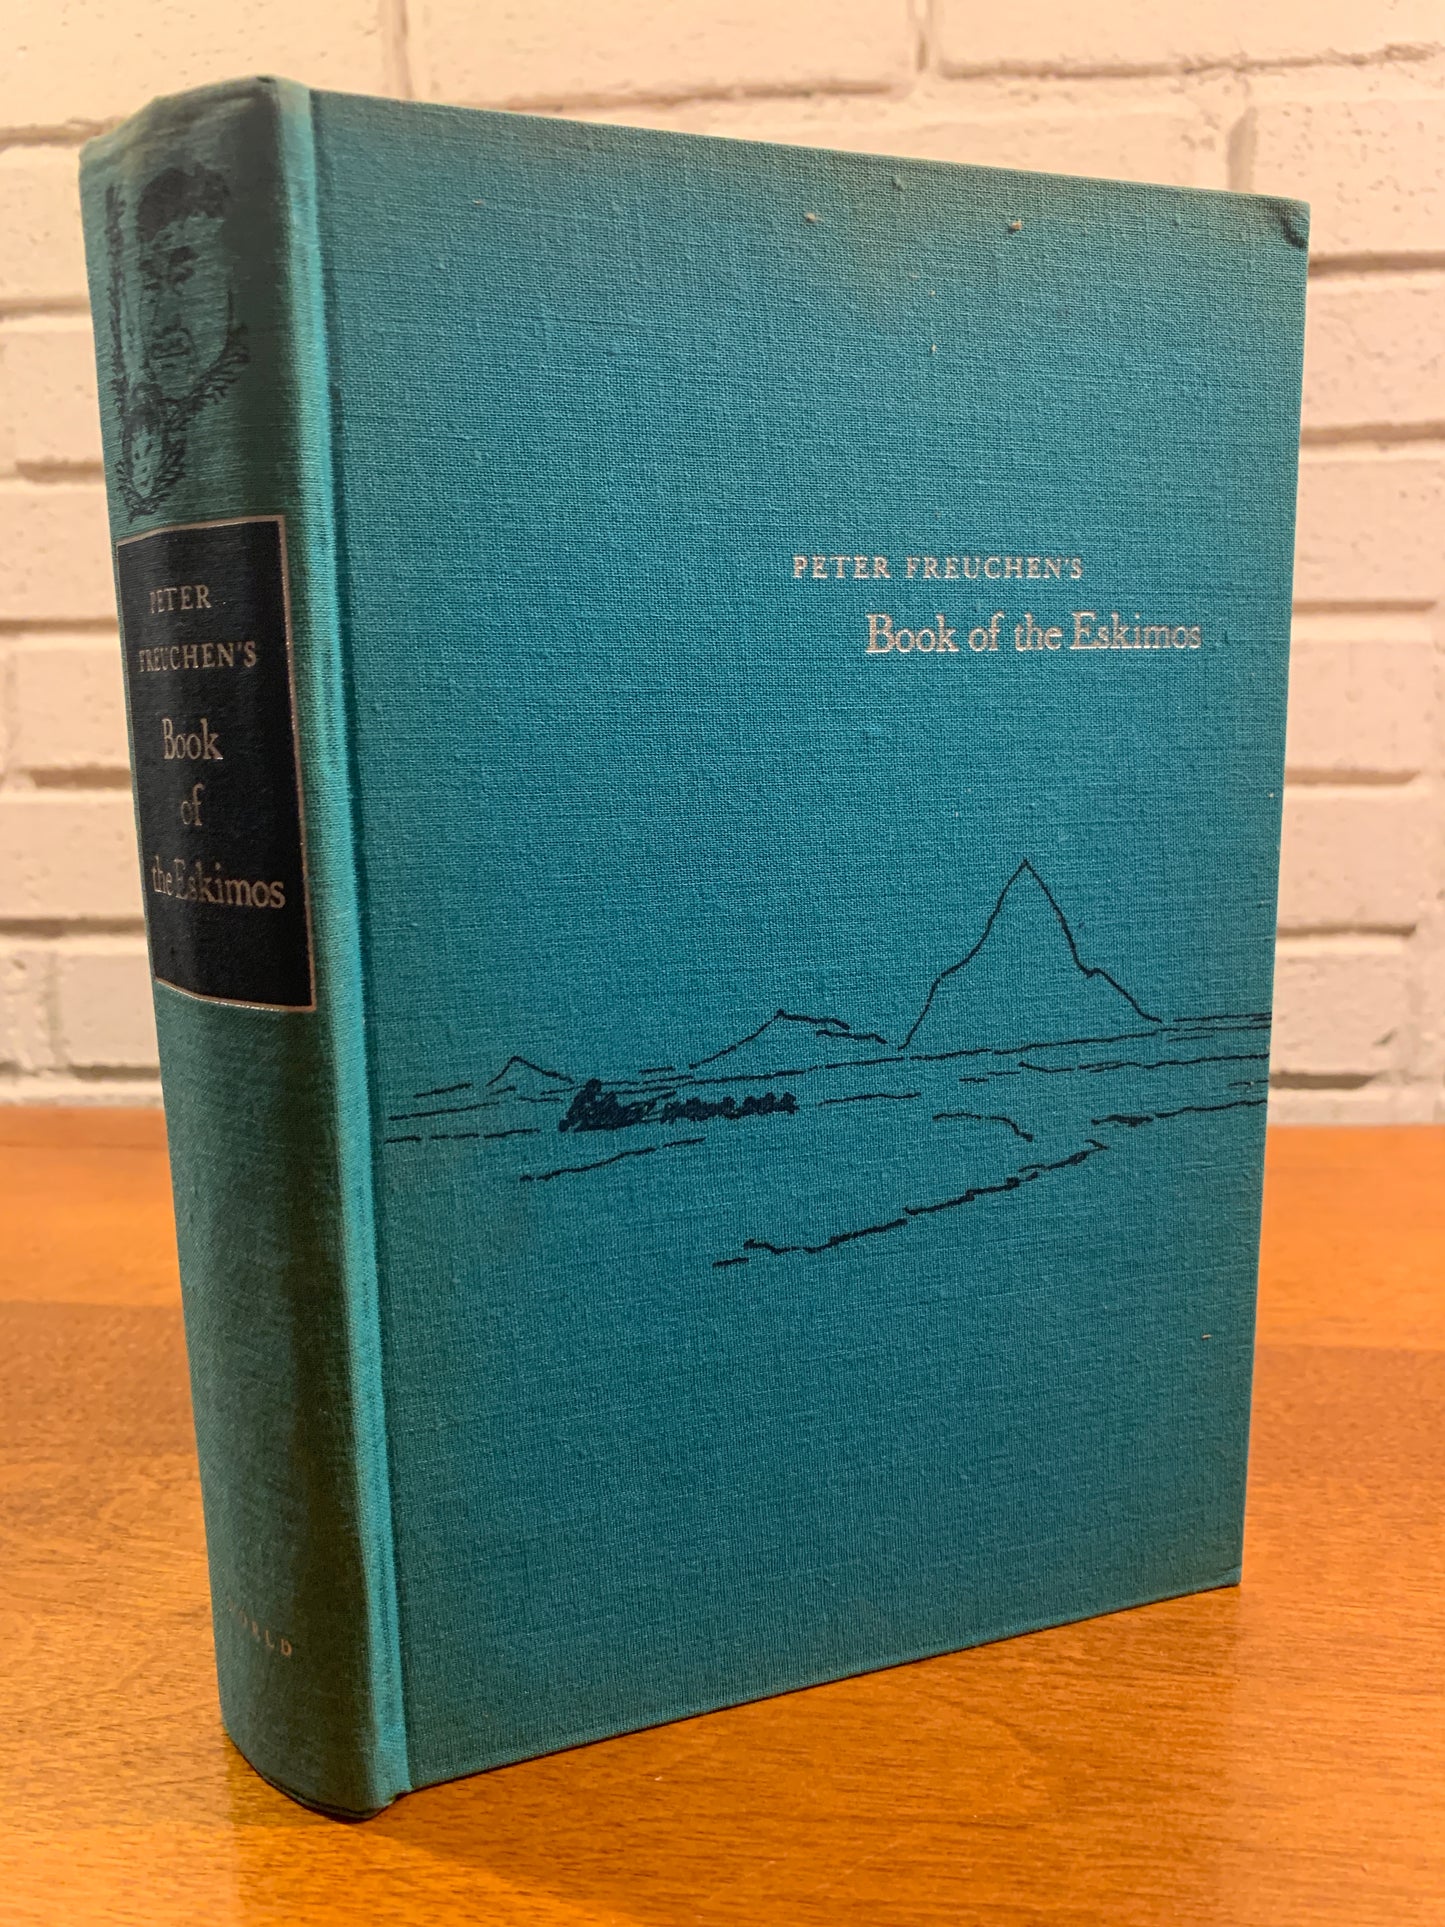 Peter Freuchen's BOOK OF THE ESKIMOS, Dagmar Freuchen (1961) 1st Edition